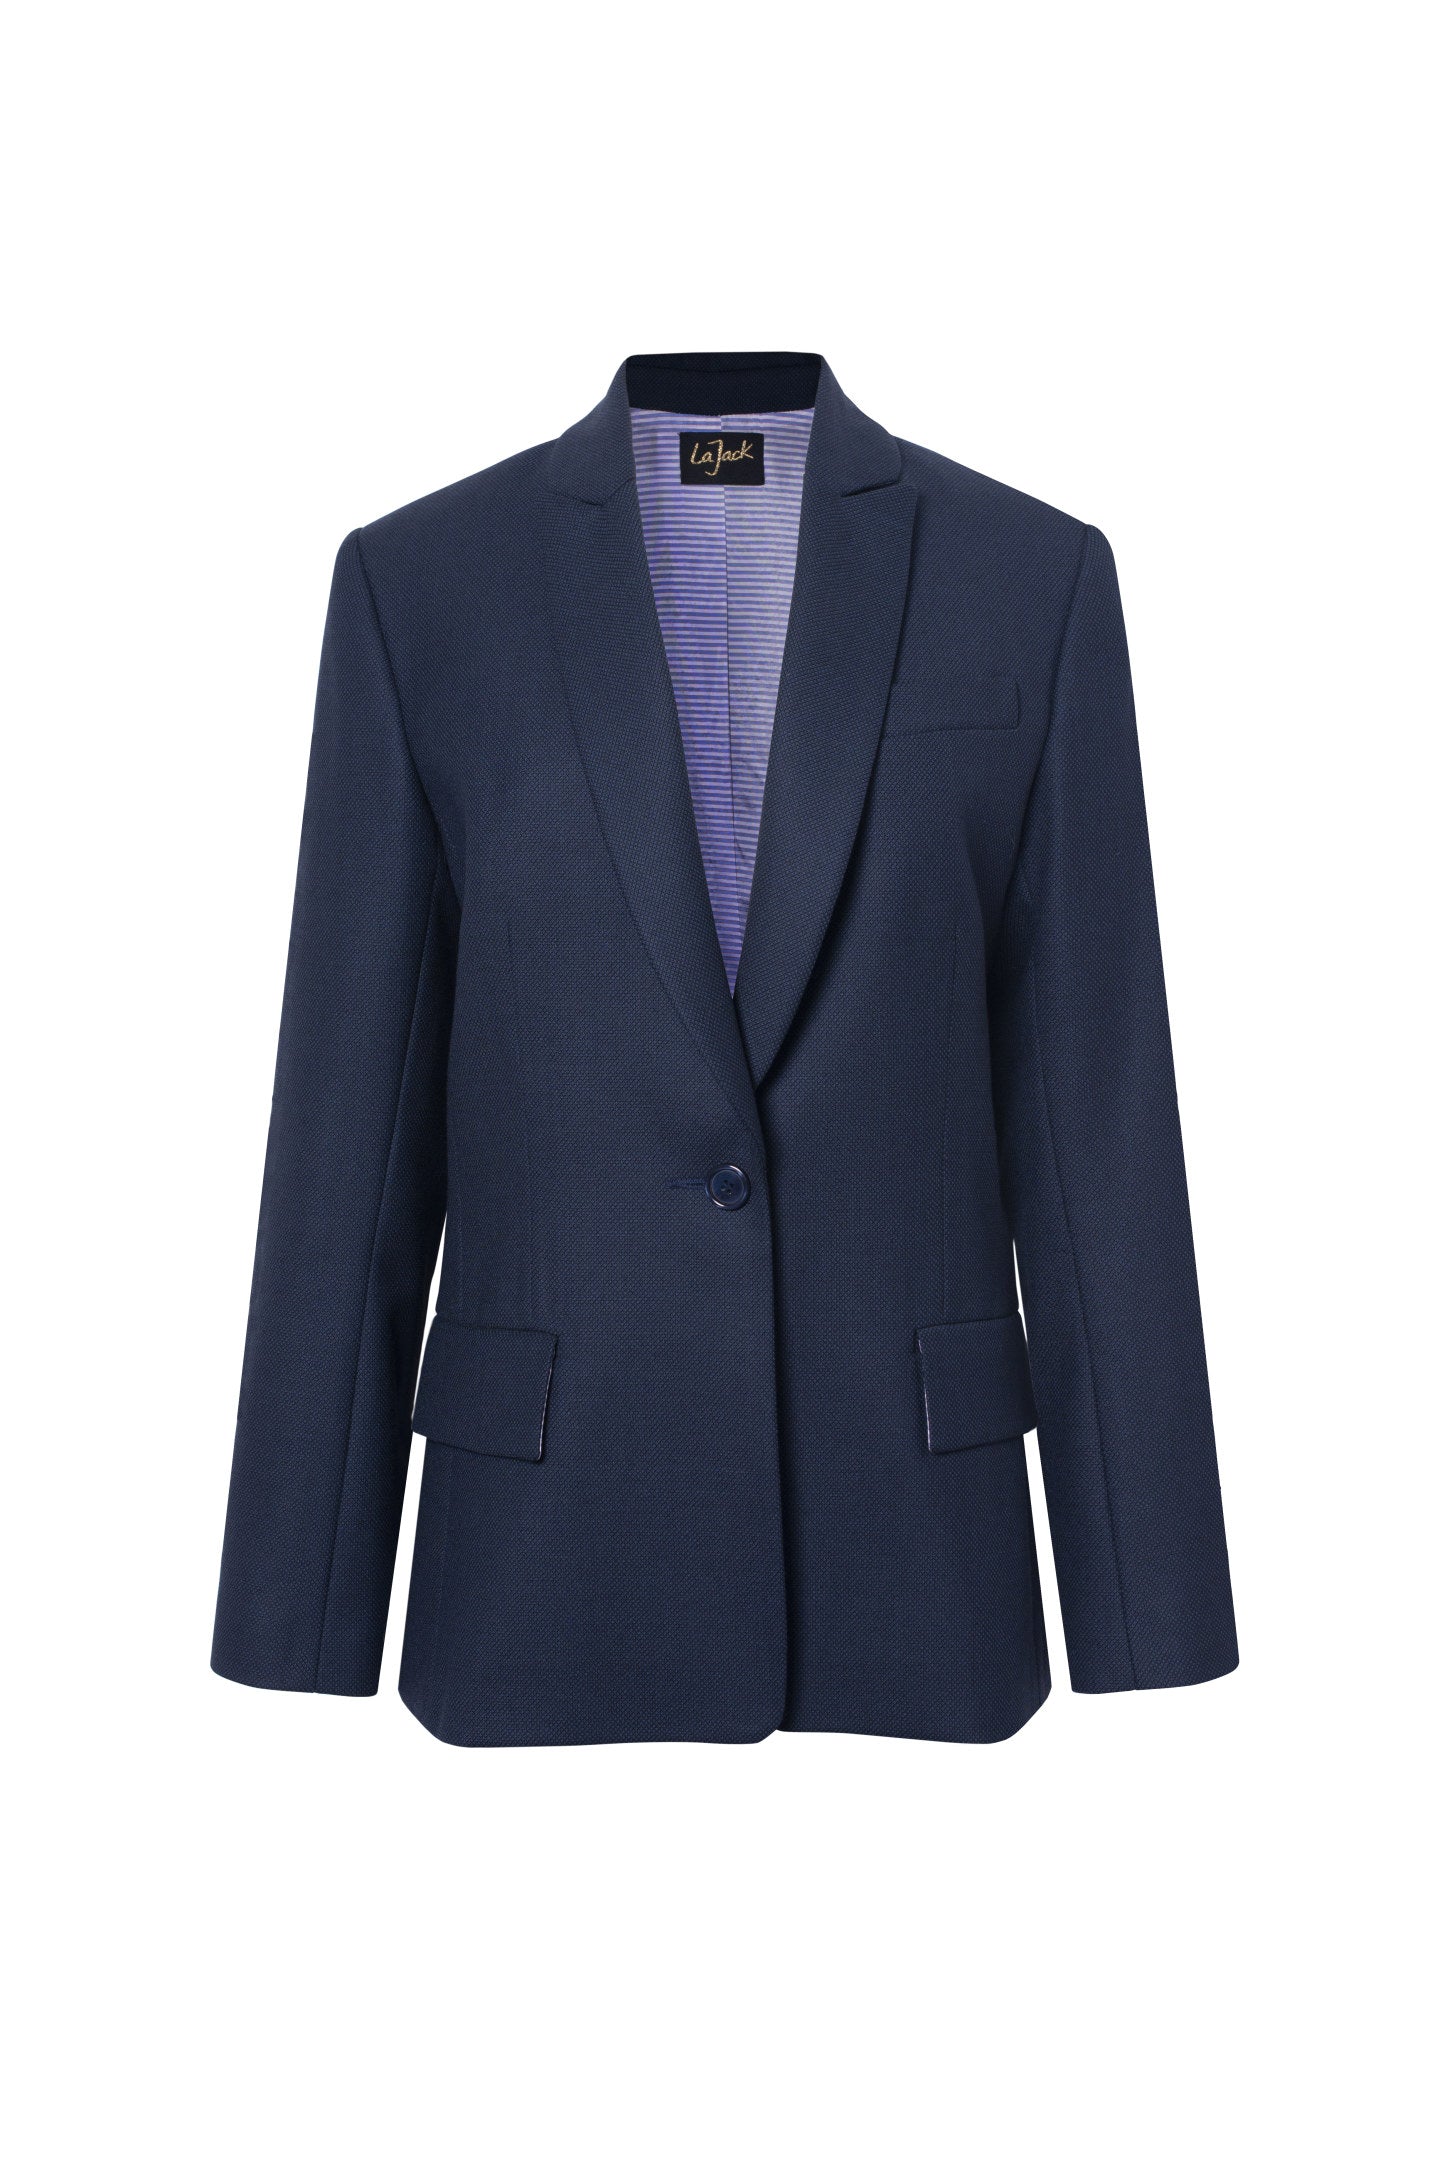 La Sophia - Navy Blue Wool Blazer Jacket with Caviar Pattern